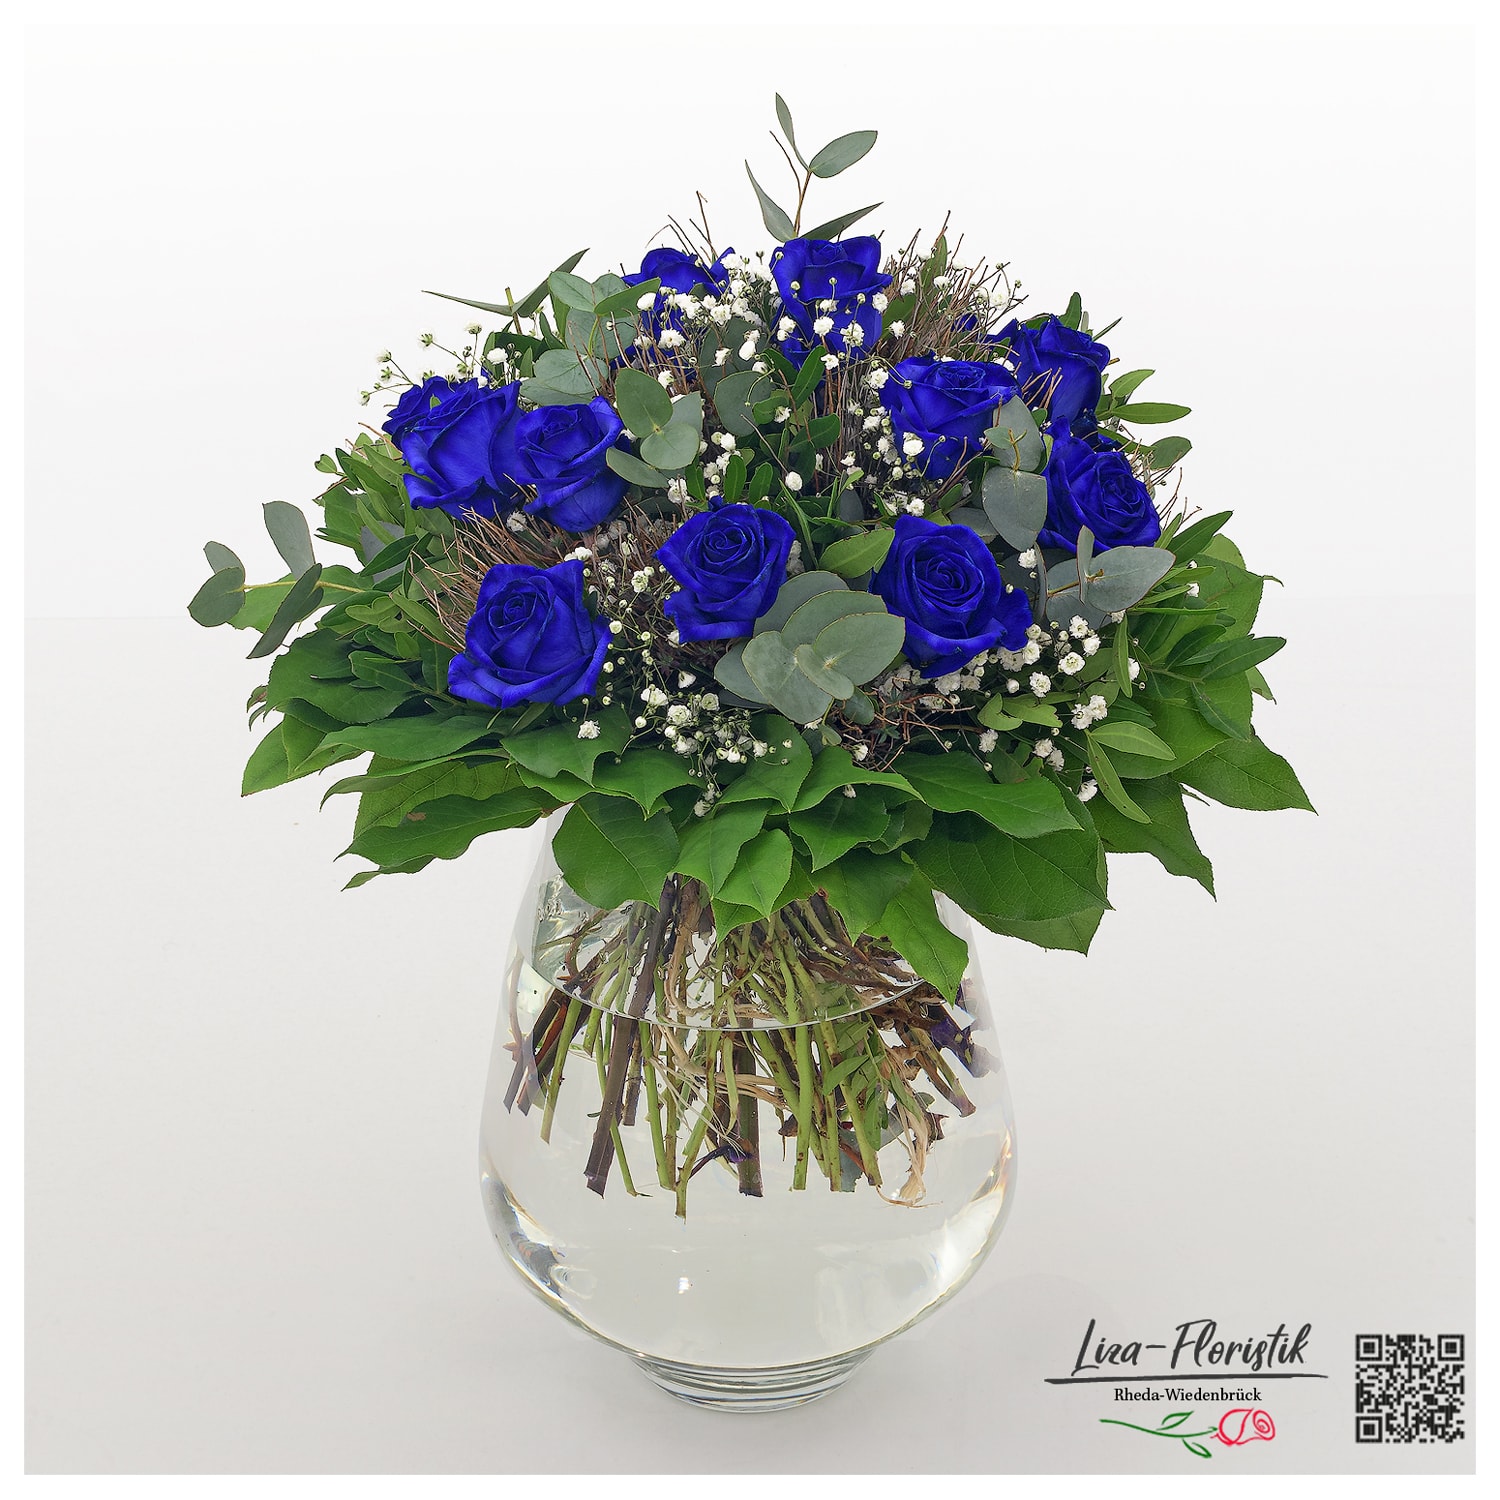 Blumenstrauß mit blauen Rosen, Eukalyptus und Schleierkraut